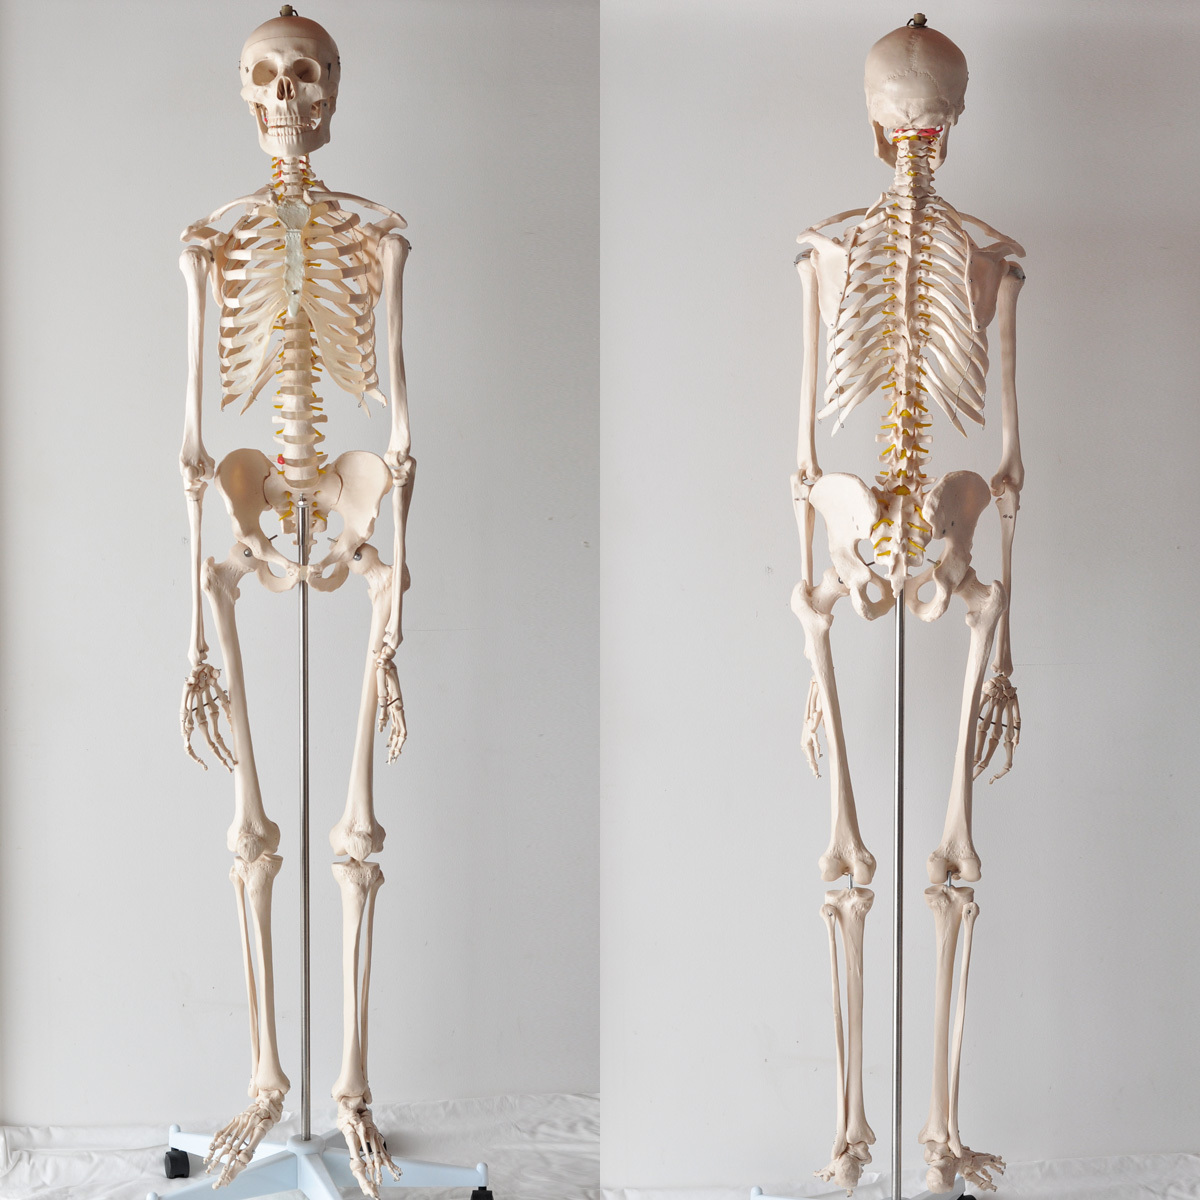 大切な人へのギフト探し スタンド付き 全長180cm位 1 1等身大 骨格模型 人体模型 美品 教育 接骨院 マネキン ディスプレイ 什器 その他